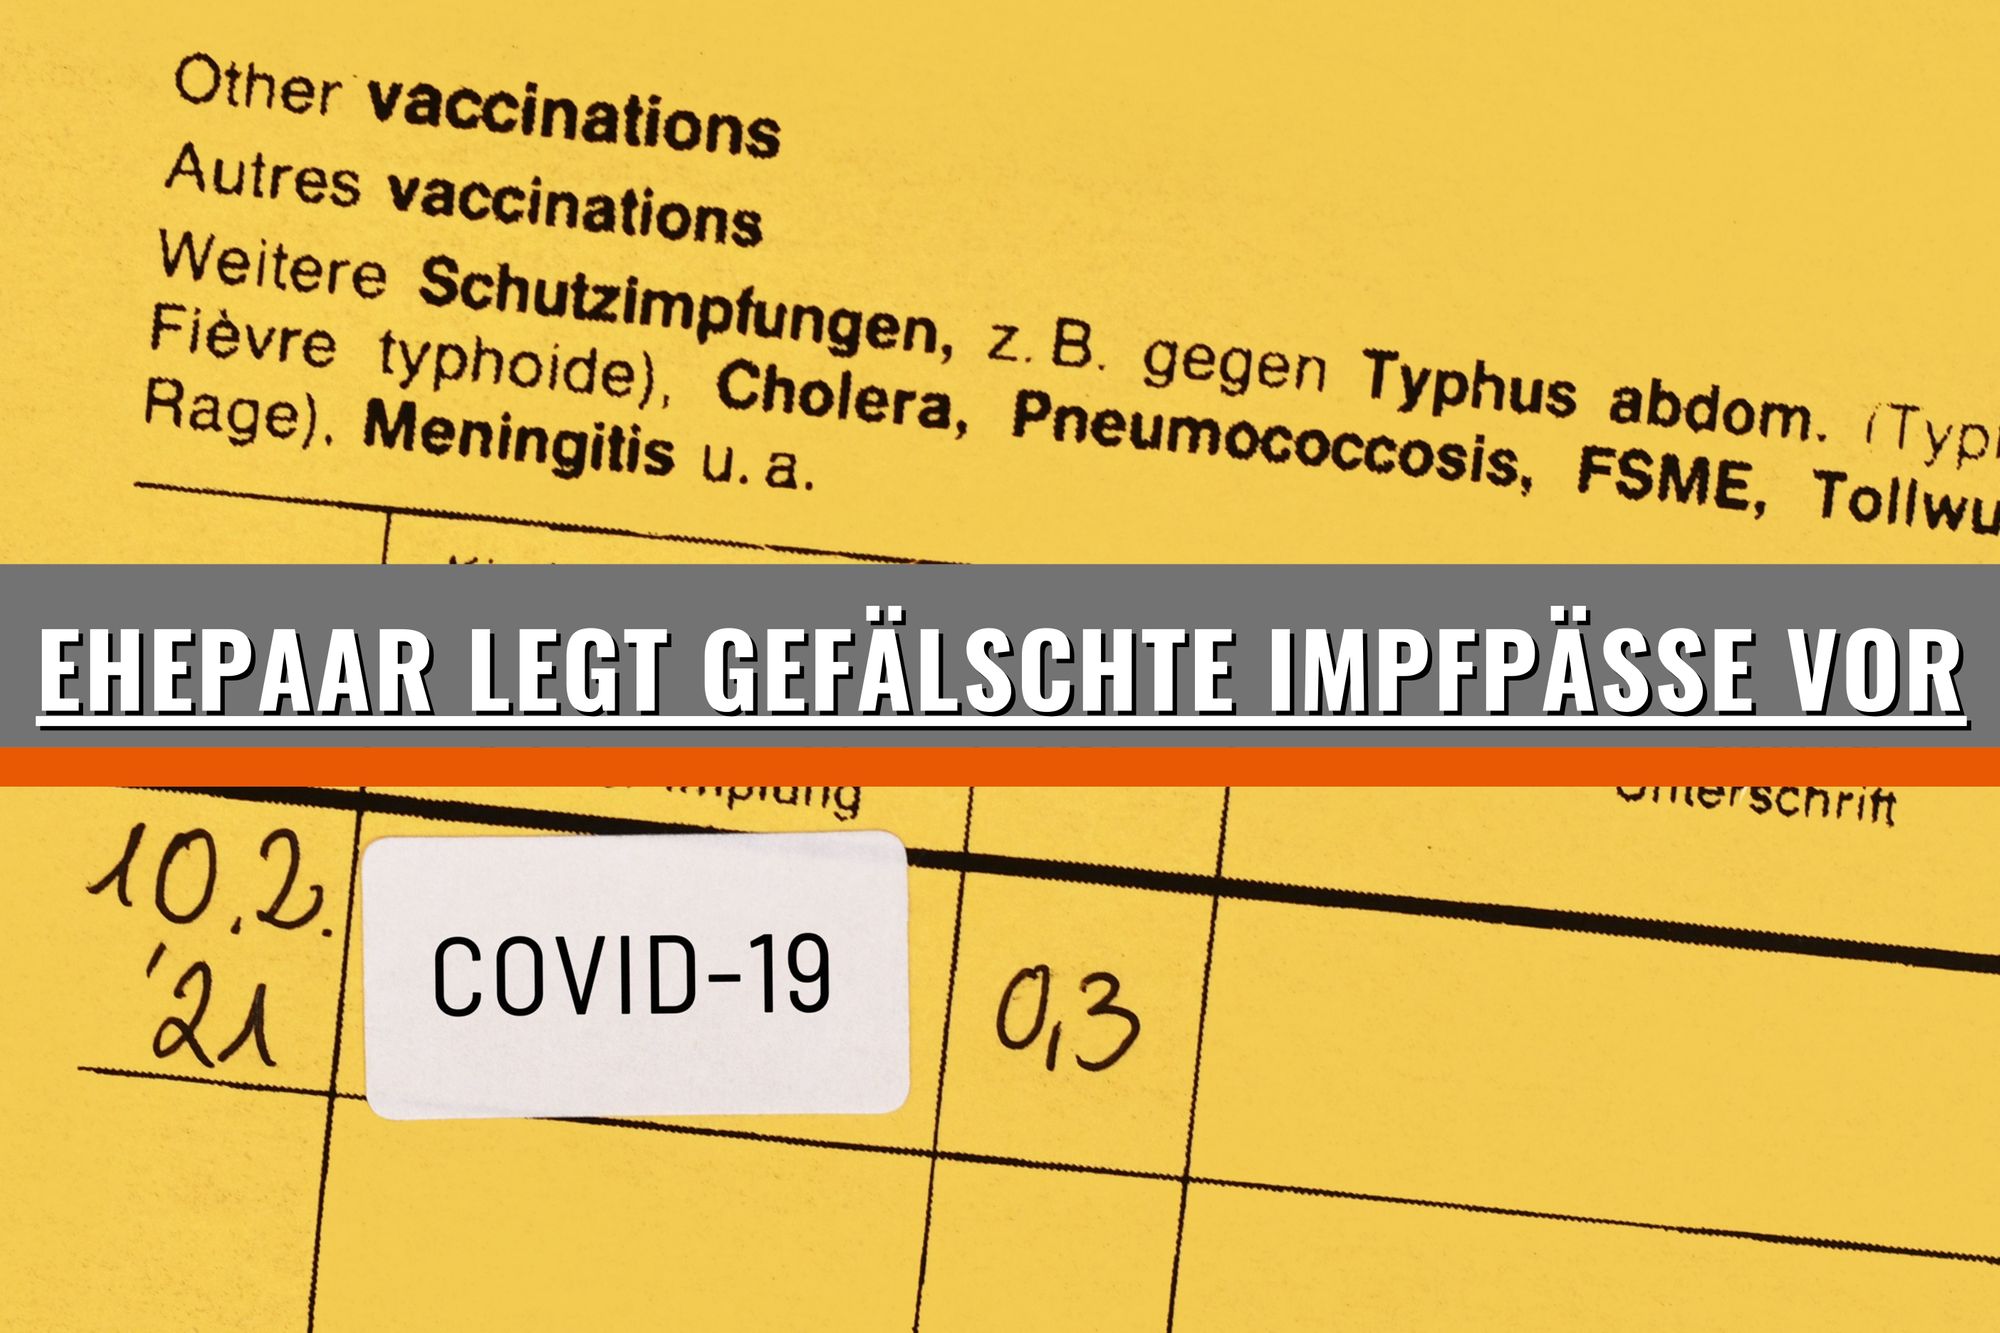 NRW: Ehepaar legt gefälschte Impfpässe vor – Anzeige